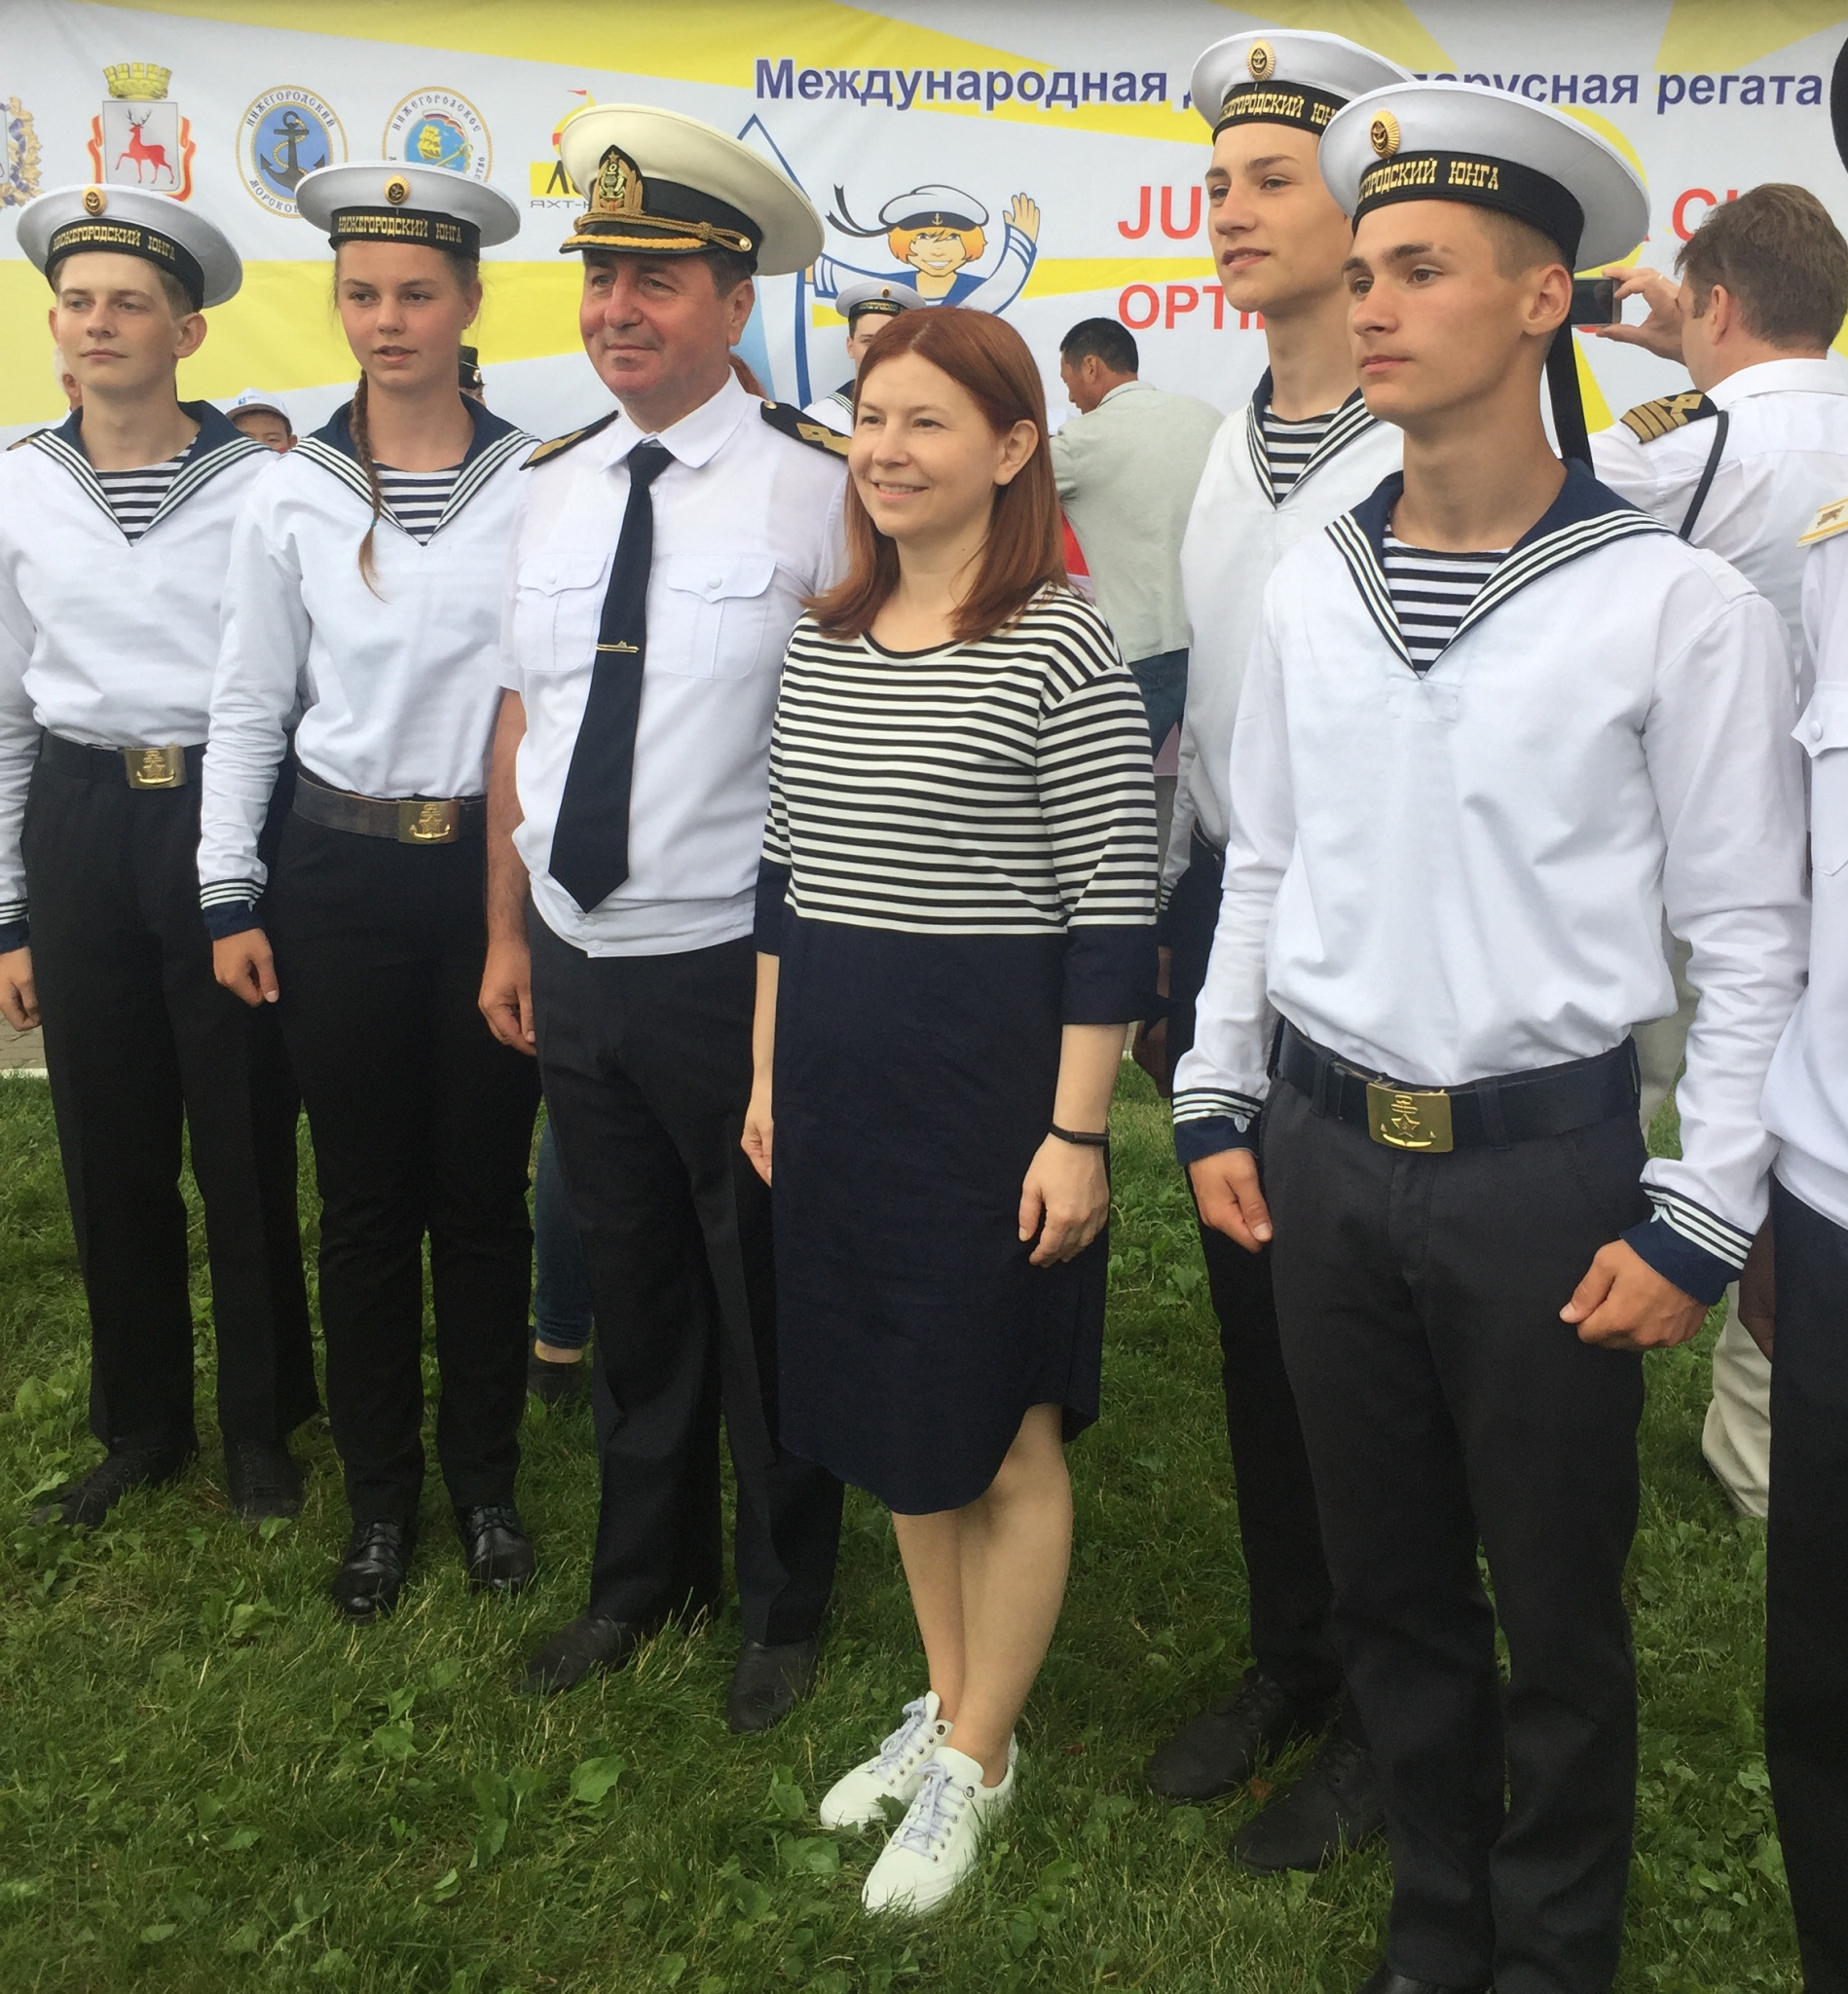 В Нижнем Новгороде стартовали международные соревнования по парусному спорту